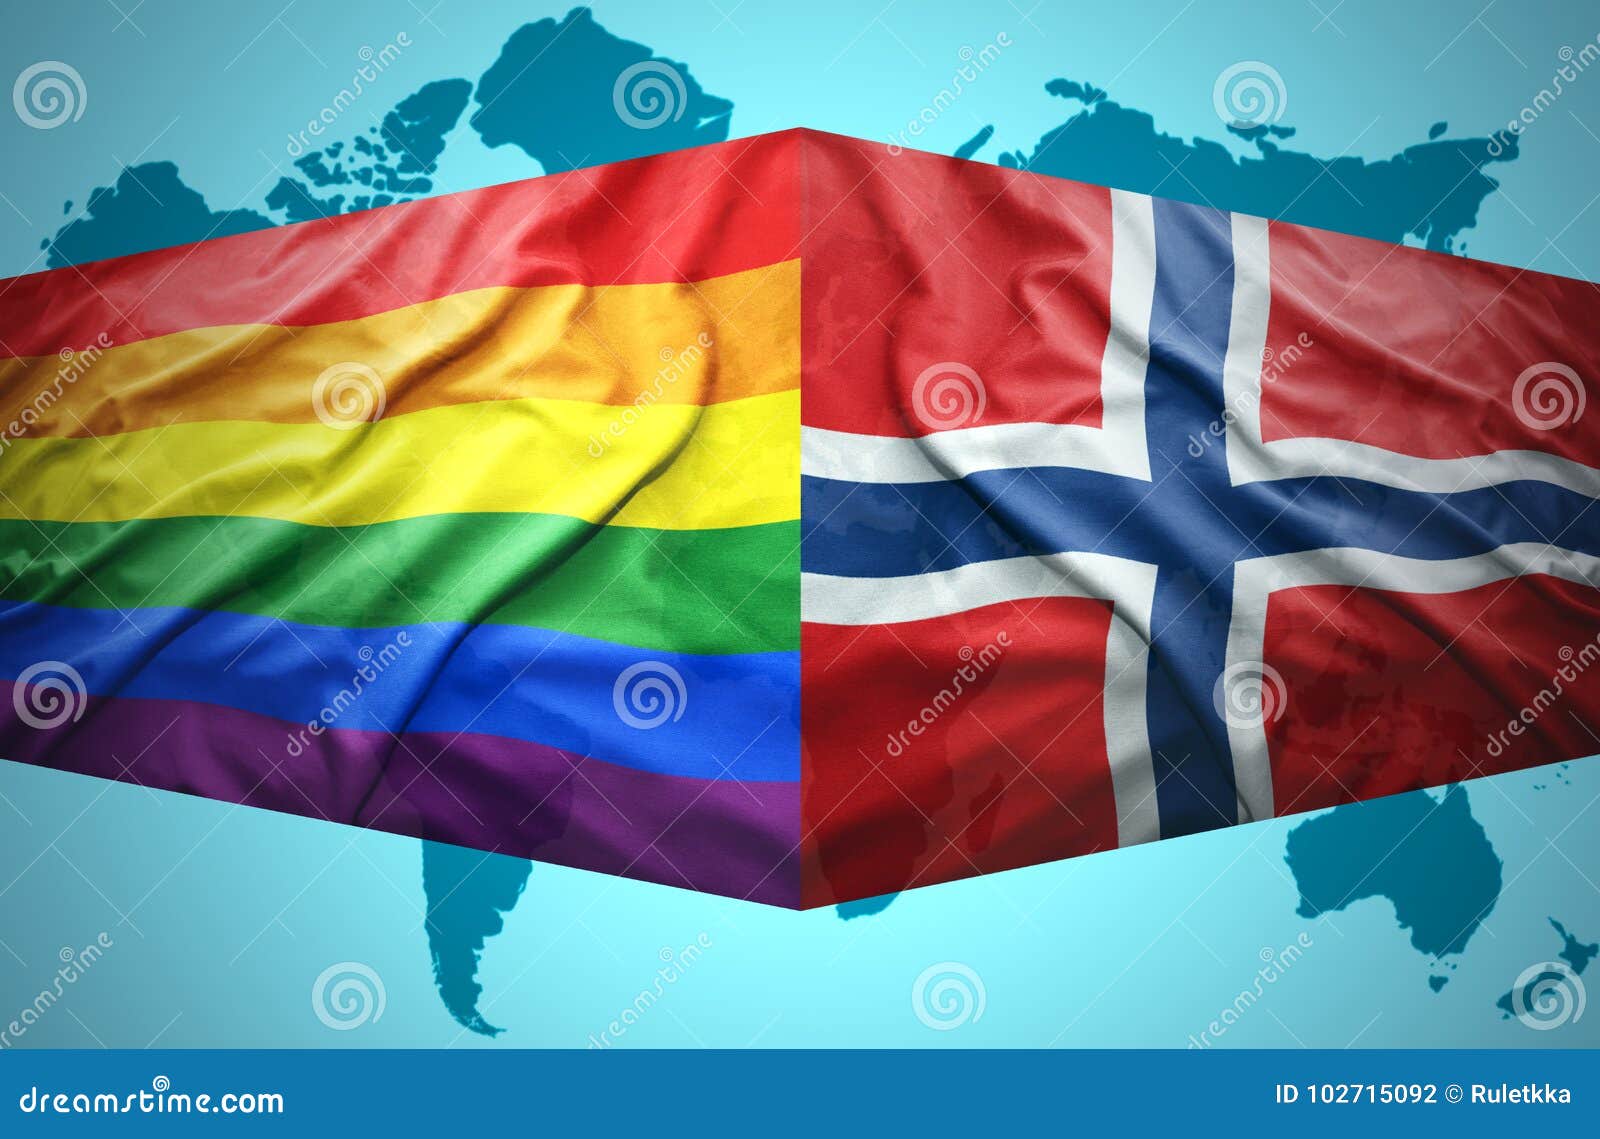 Norwegian Twinks lesbian adventure